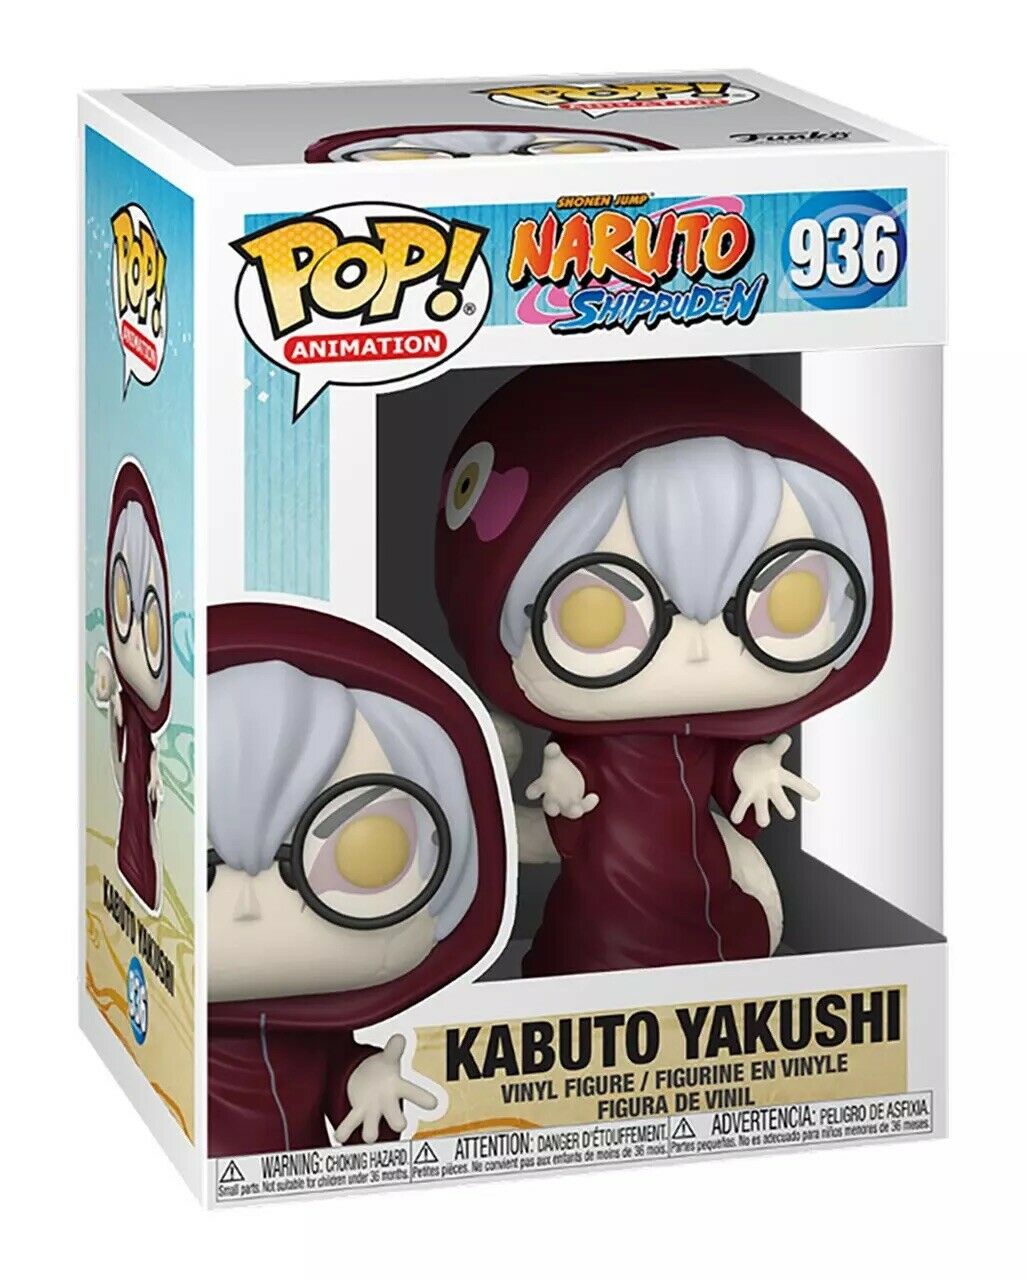 Kabuto Yakushi #936 Funko Pop! Naruto Shippuden